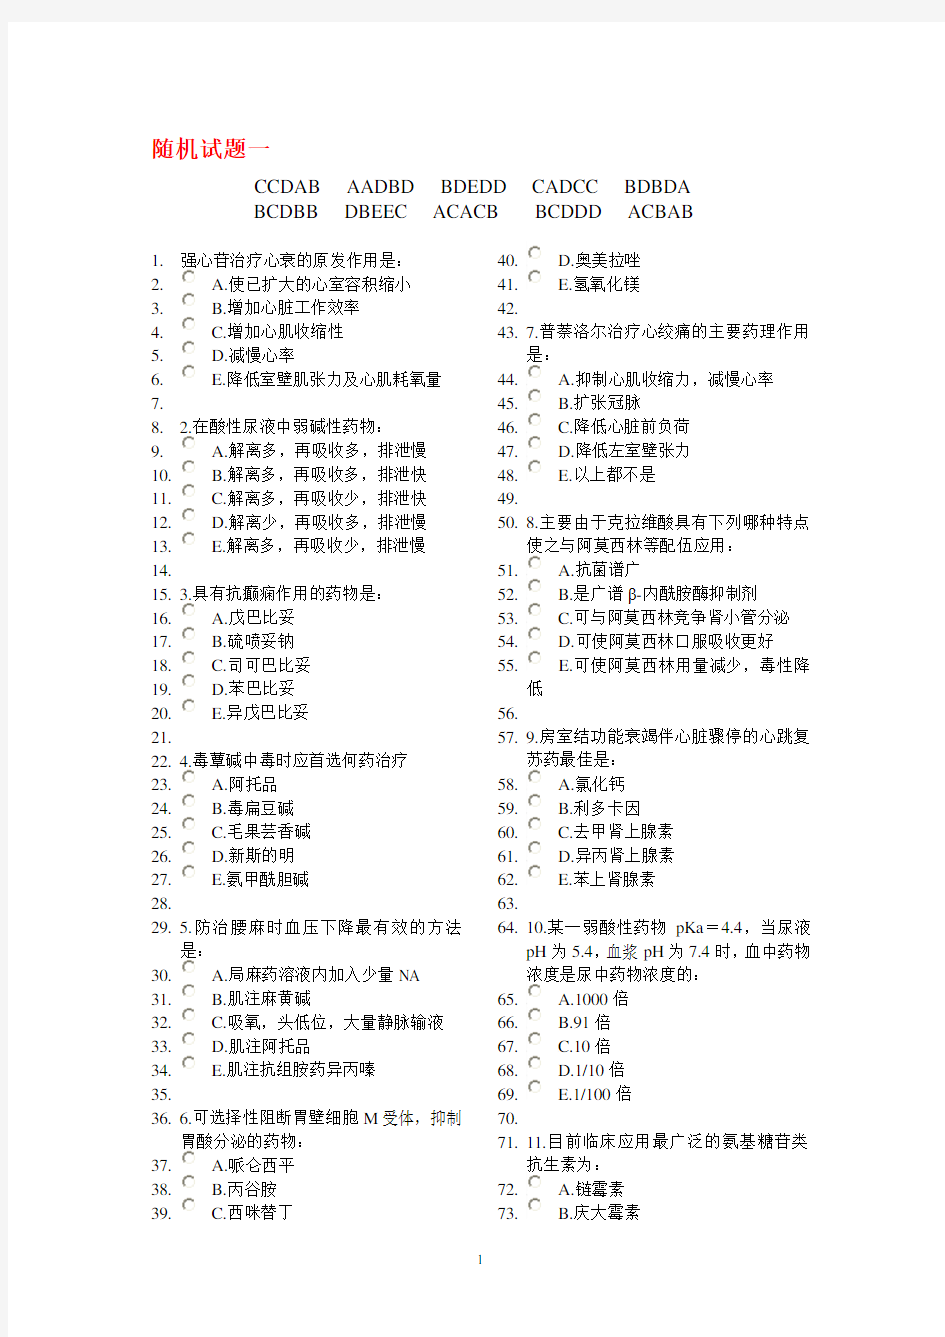 中国医科大学网络教育药理学试题及答案(2020年整理).pdf